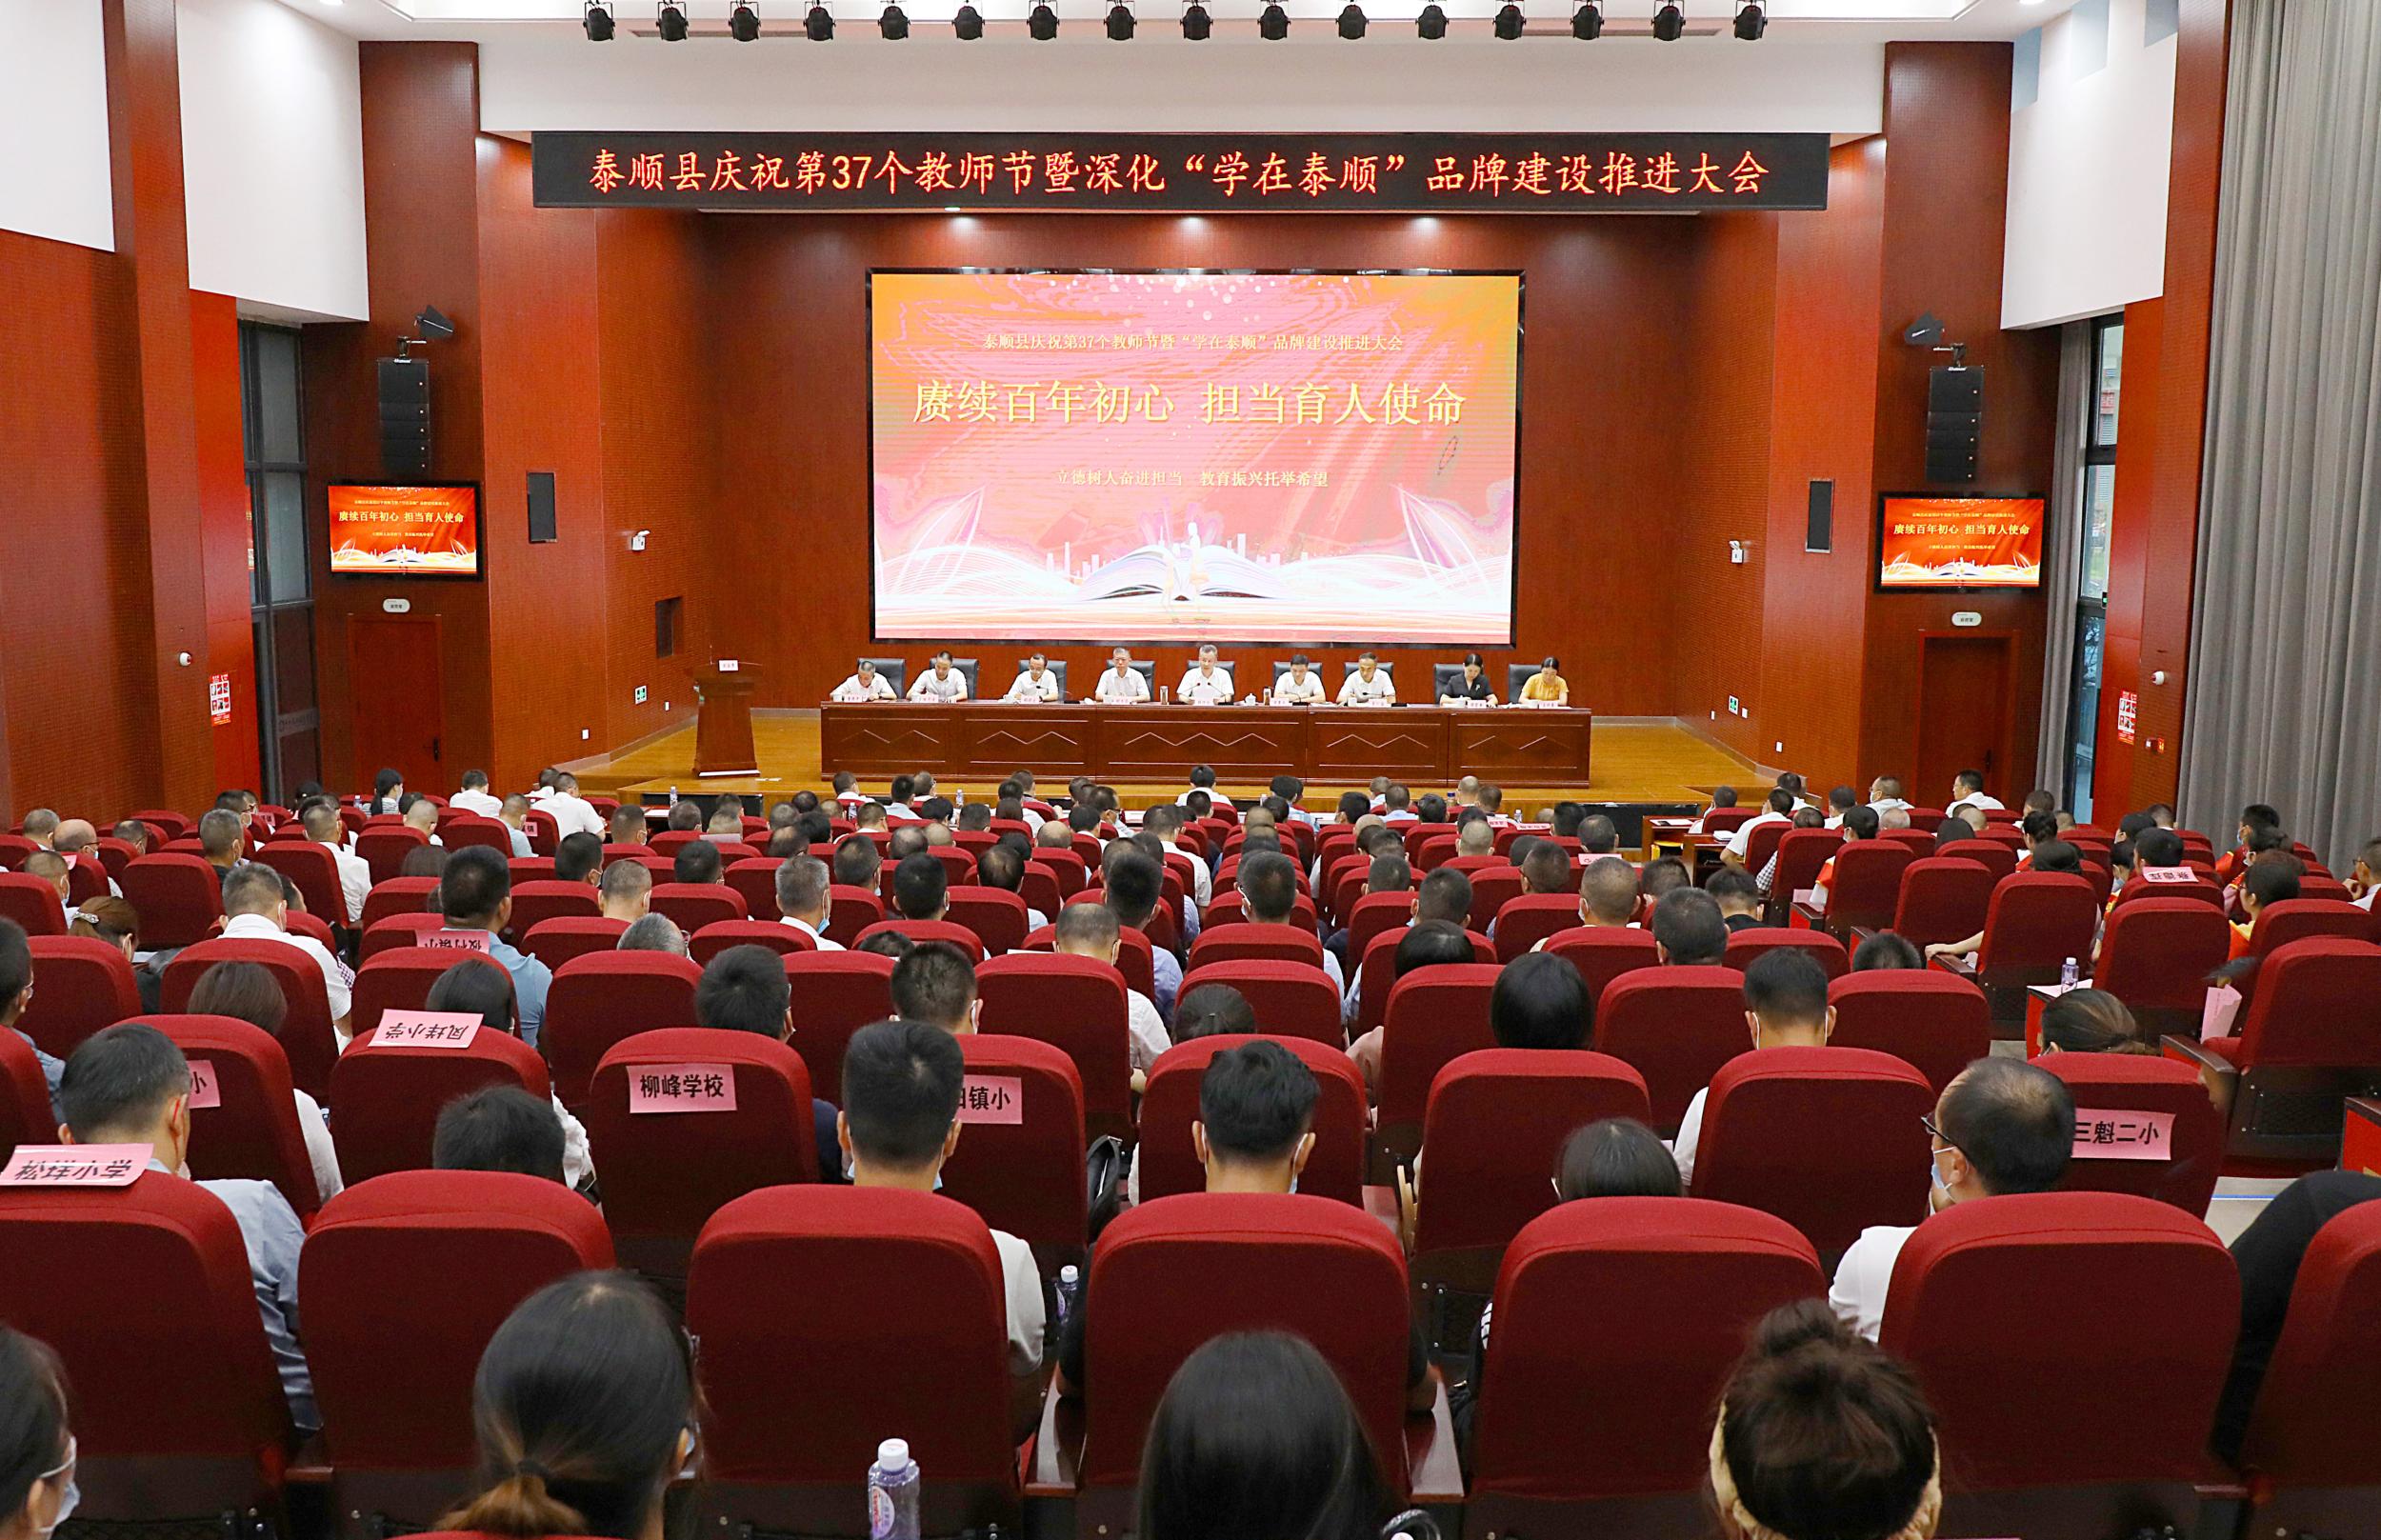 泰顺县庆祝第37个教师节暨深化“学在泰顺”品牌建设推进大会举行